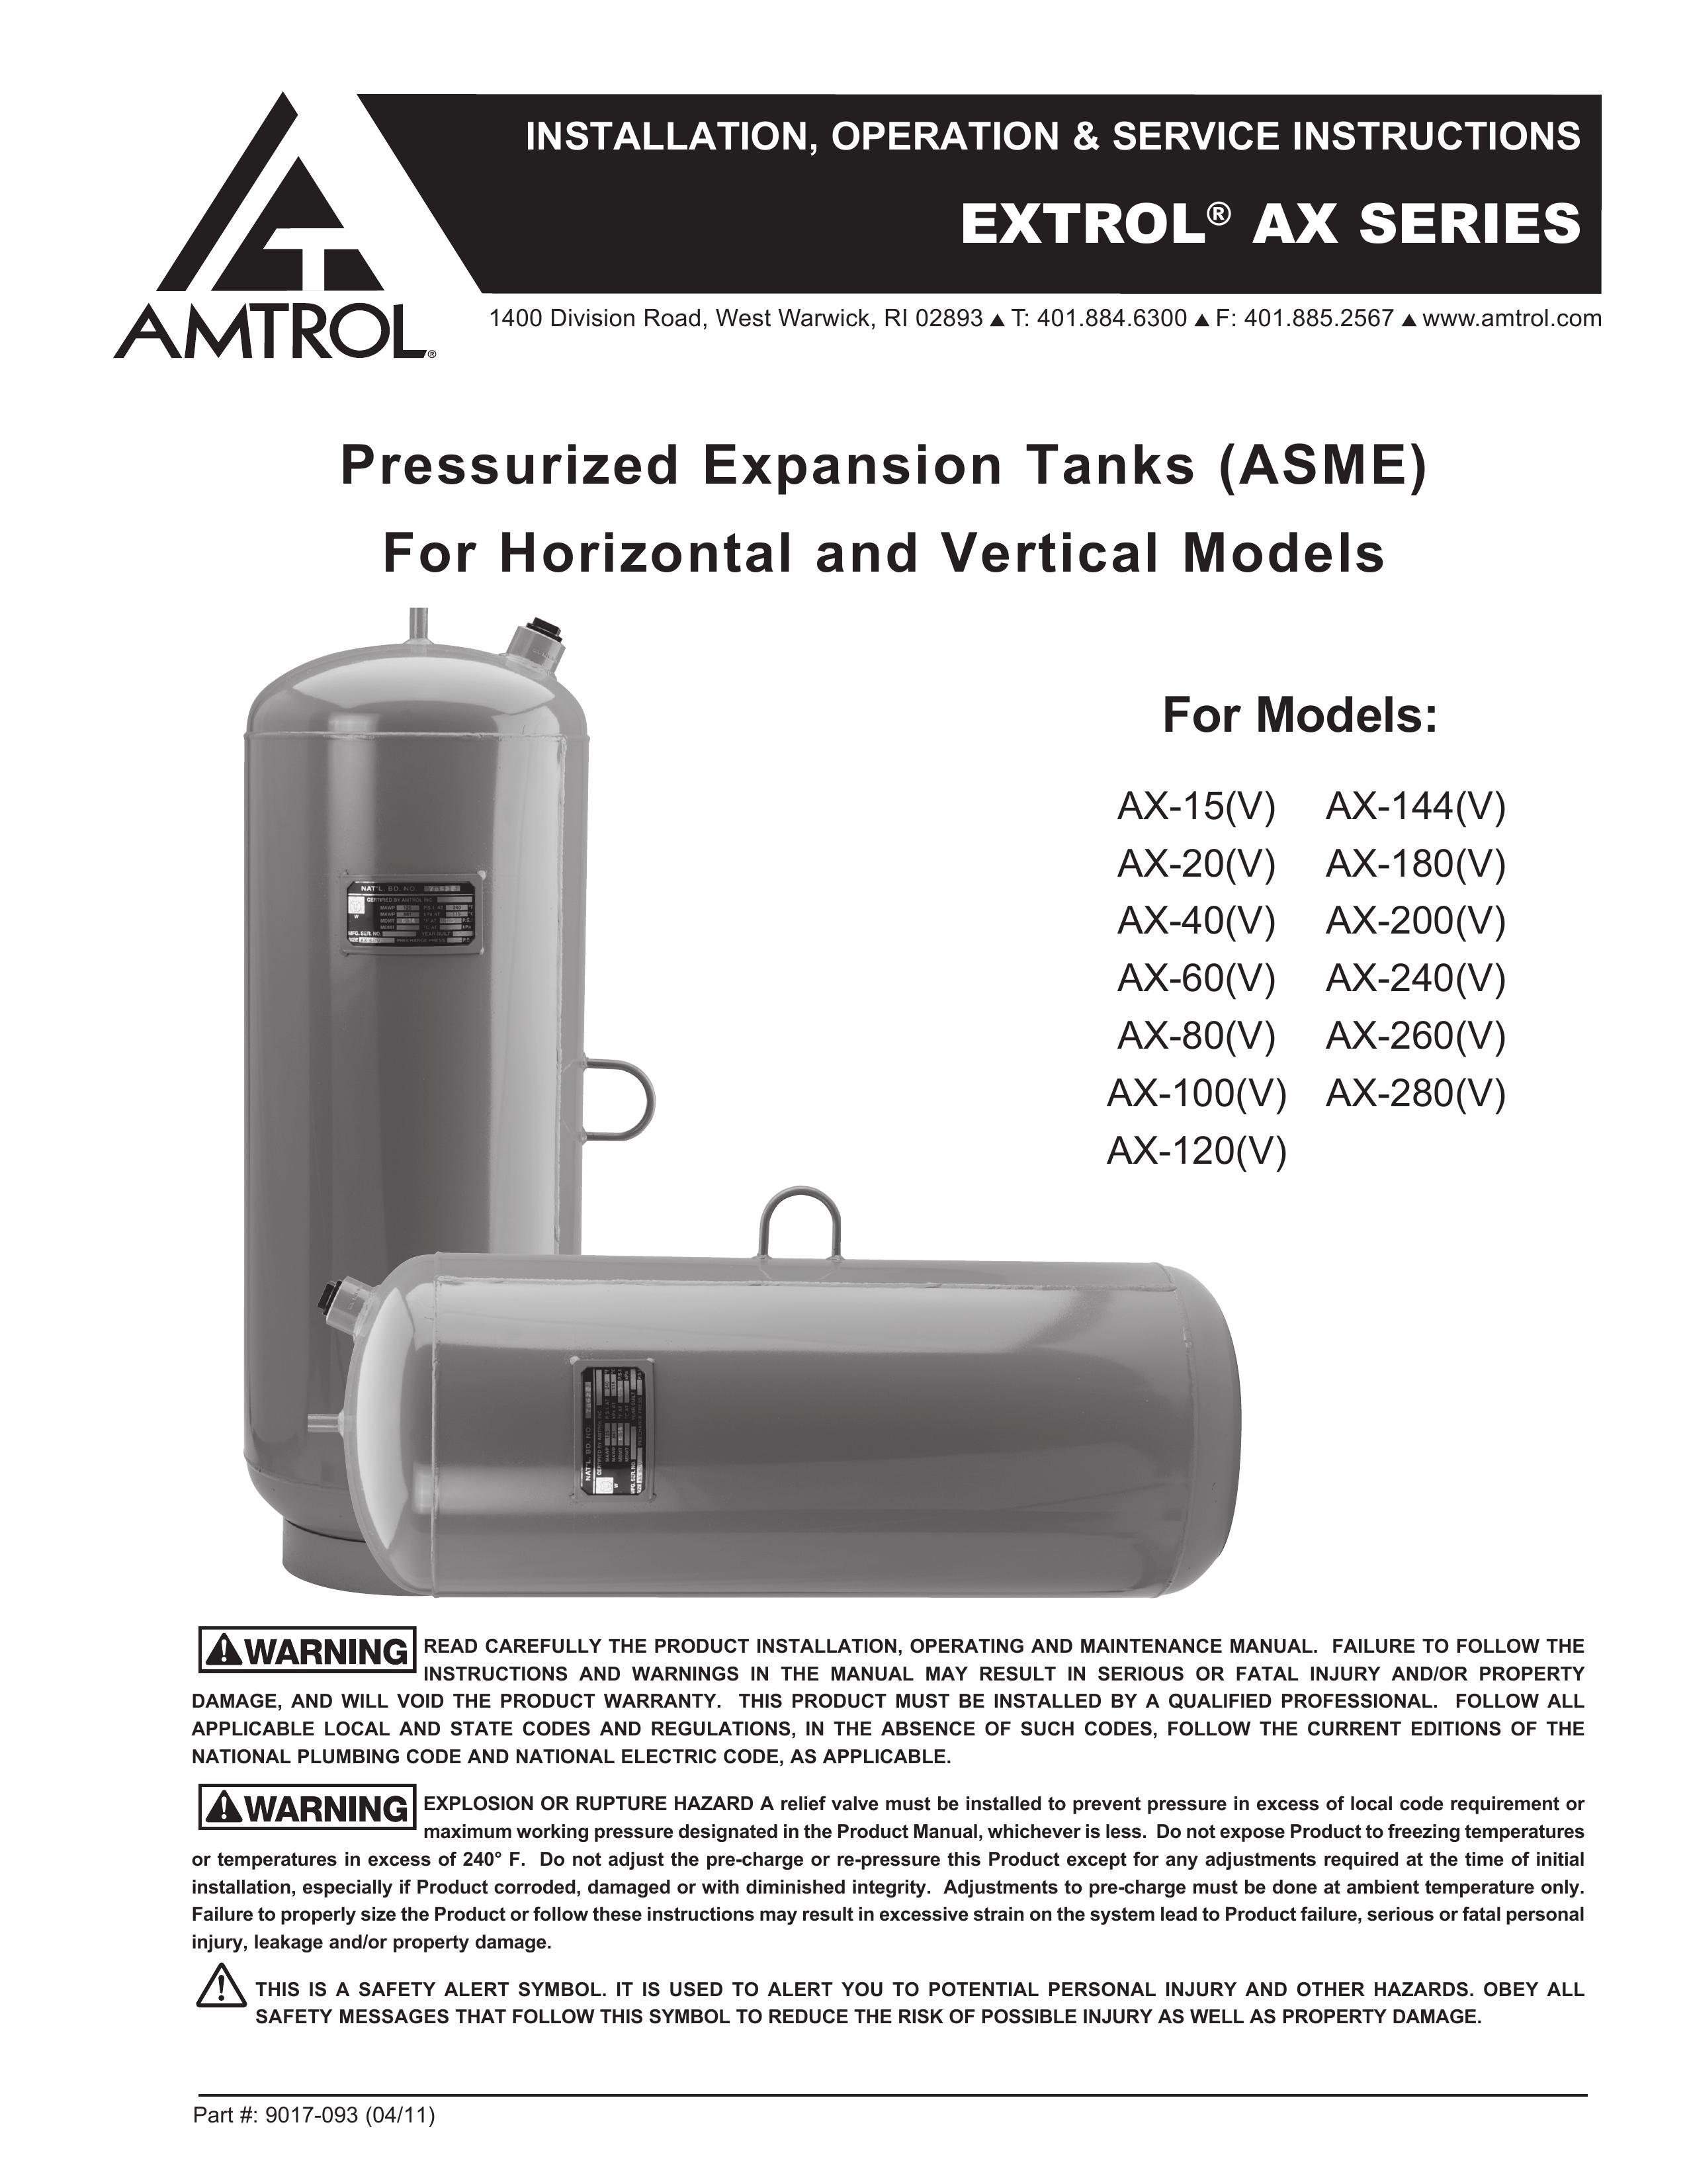 Amtrol AX-40(V) Oxygen Equipment User Manual